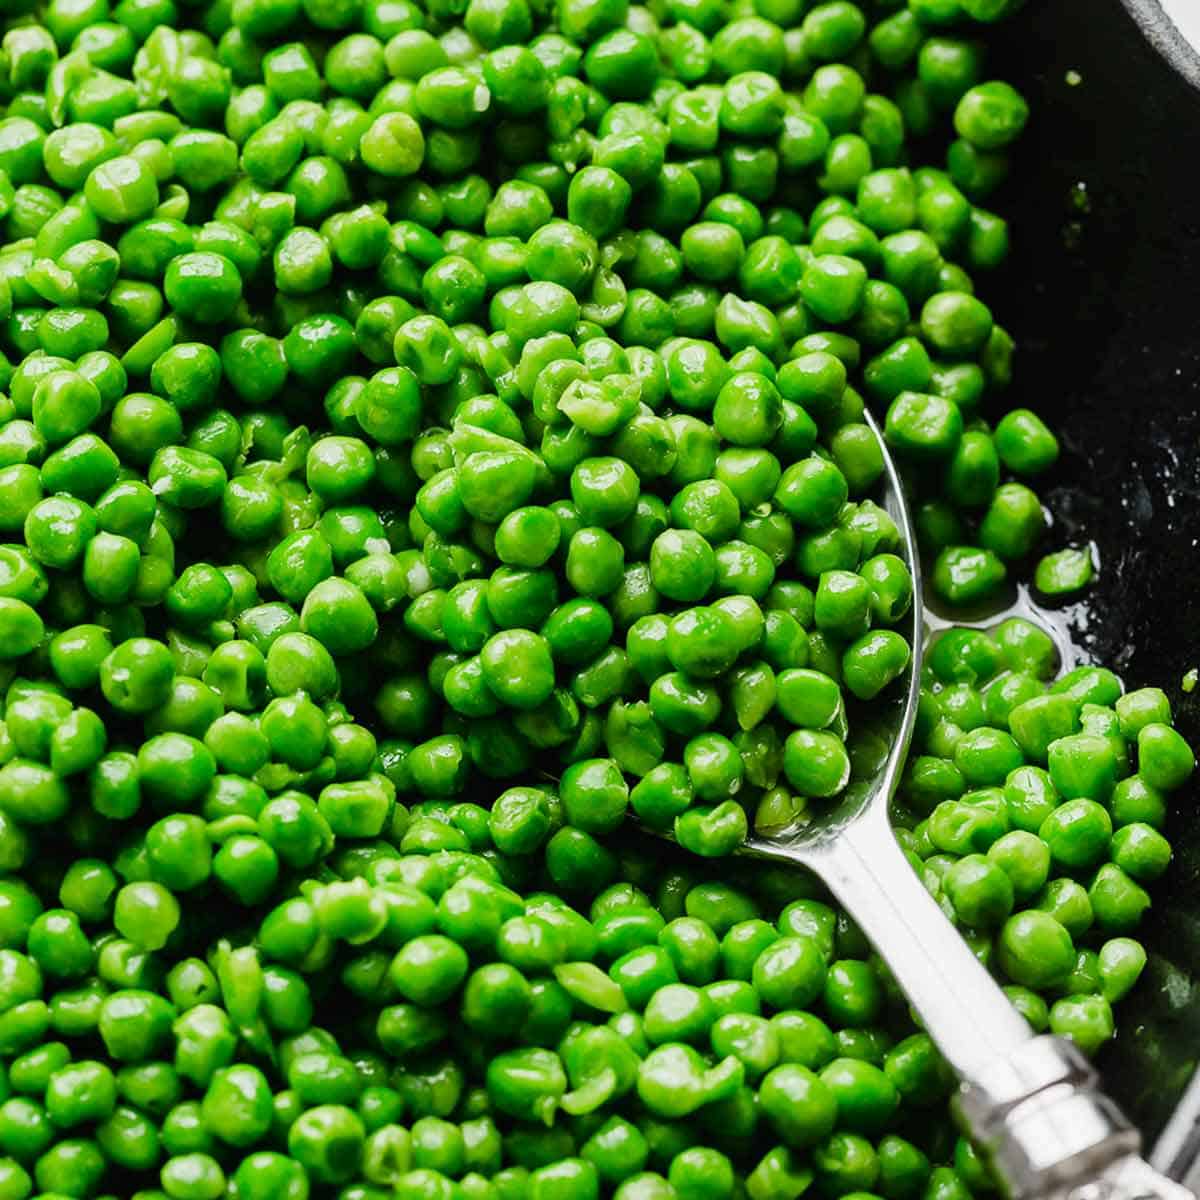 How to Cook Frozen Peas